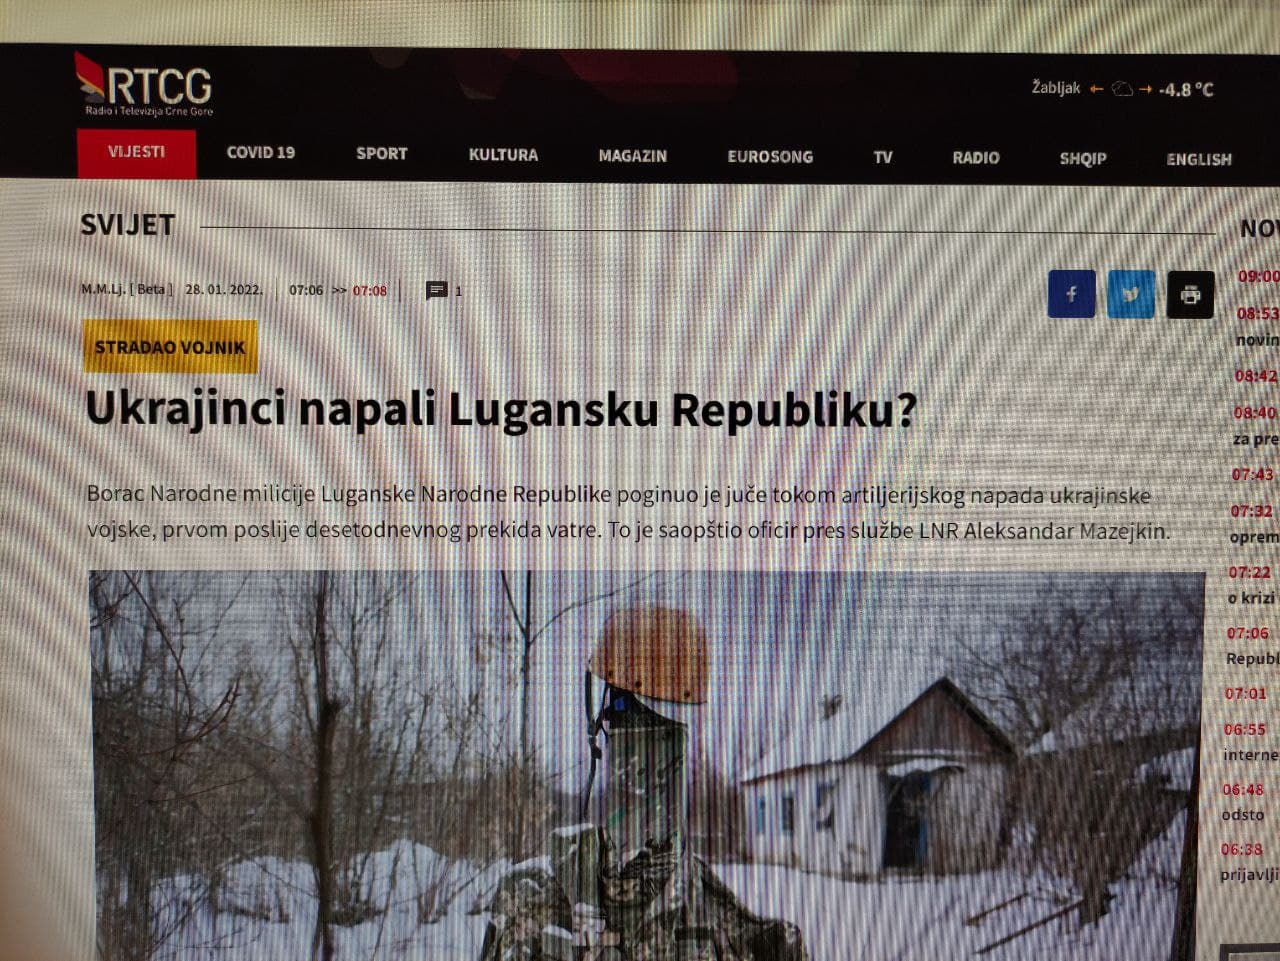 Novi skandal RTCG: Objavili da je Ukrajina napala samoproglašenu Lugansku republiku, reagovala ambasada u Podgorici